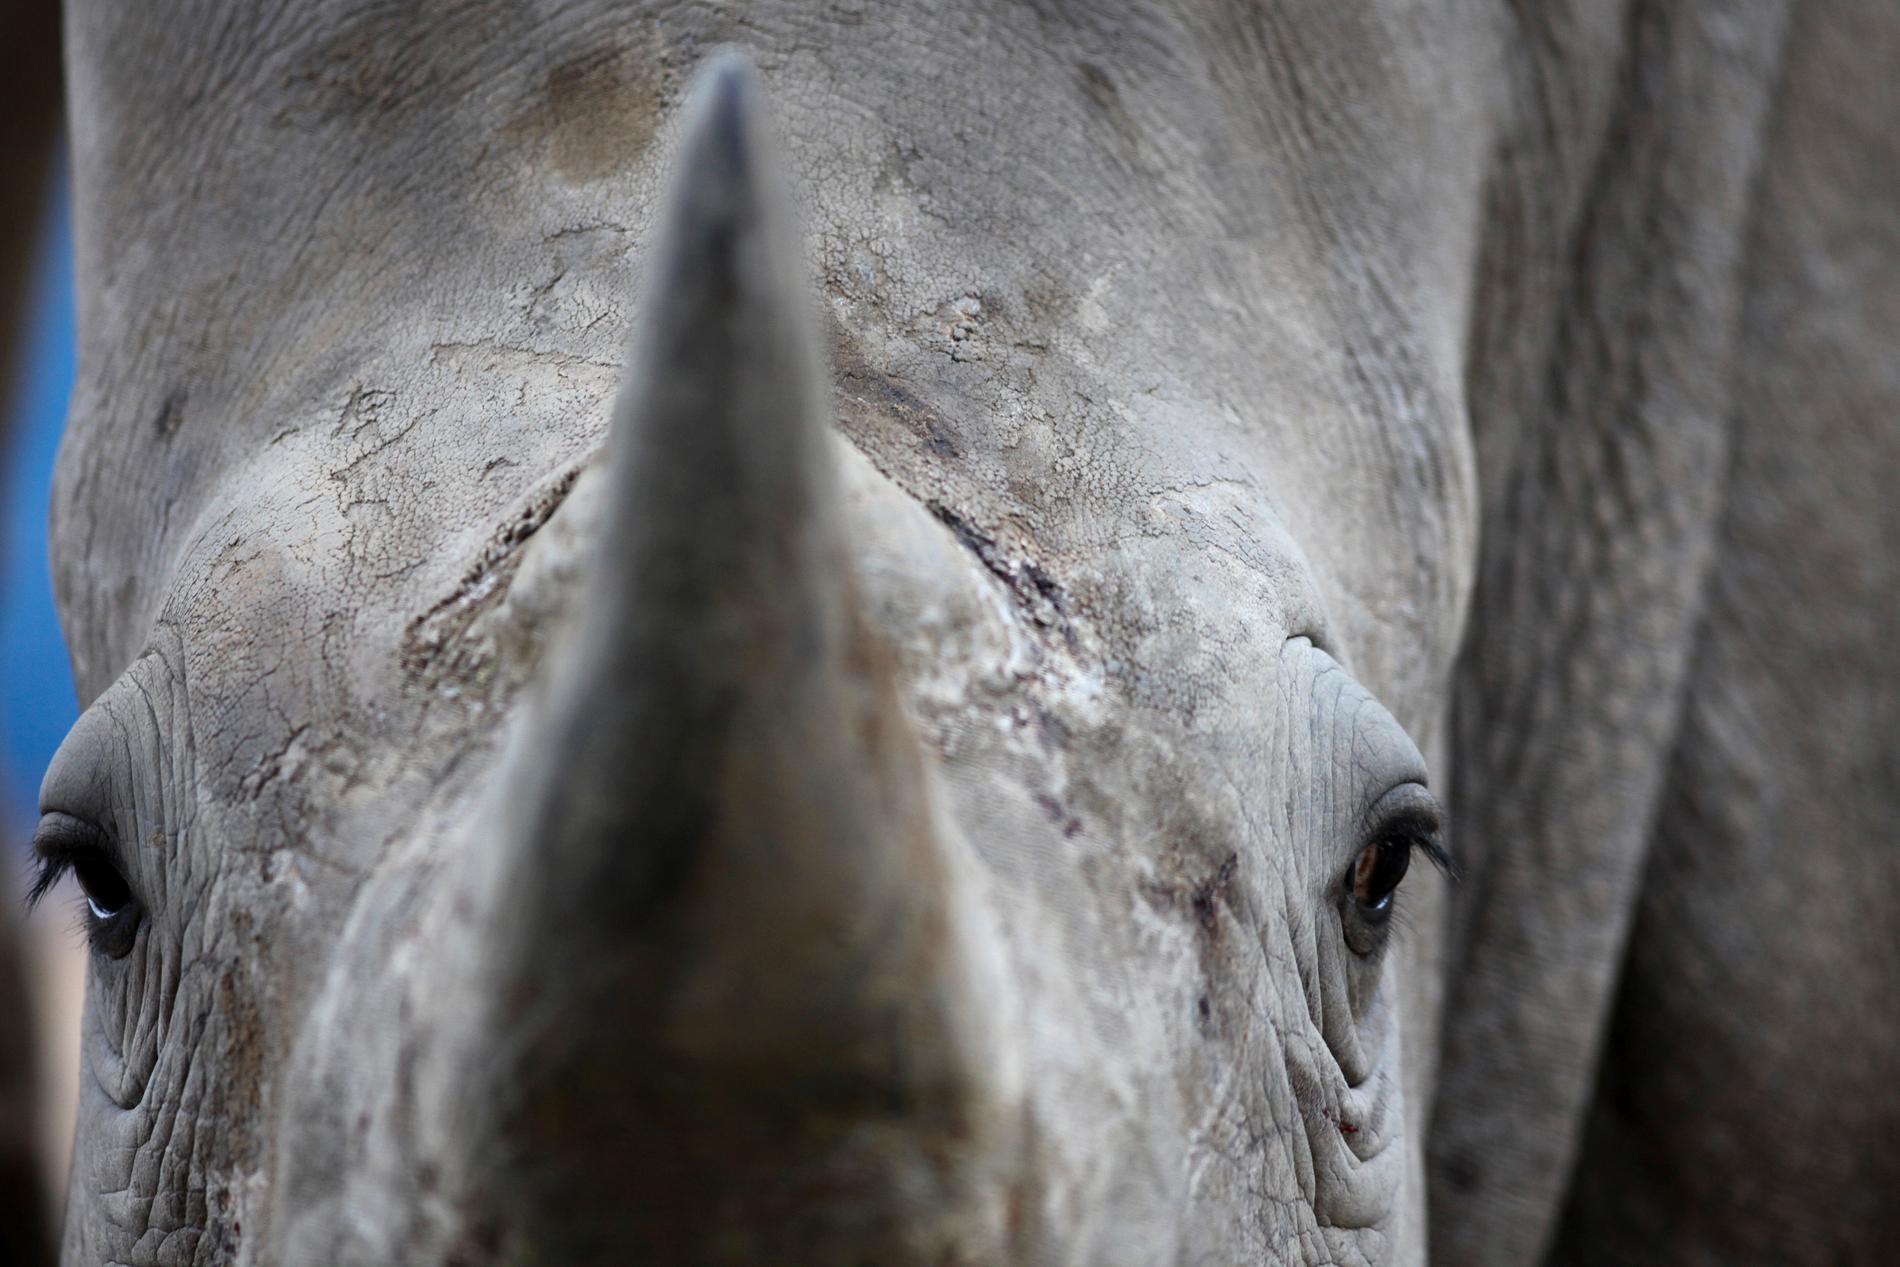 Afrikansk noshörning i Bao Son-djurparken i Hanoi, Vietnam. Till och med i djurparken har man tvingats ha dygnet runt-bevakning för att skydda noshörningen mot tjuvjägare. Arkivbild från 2012.